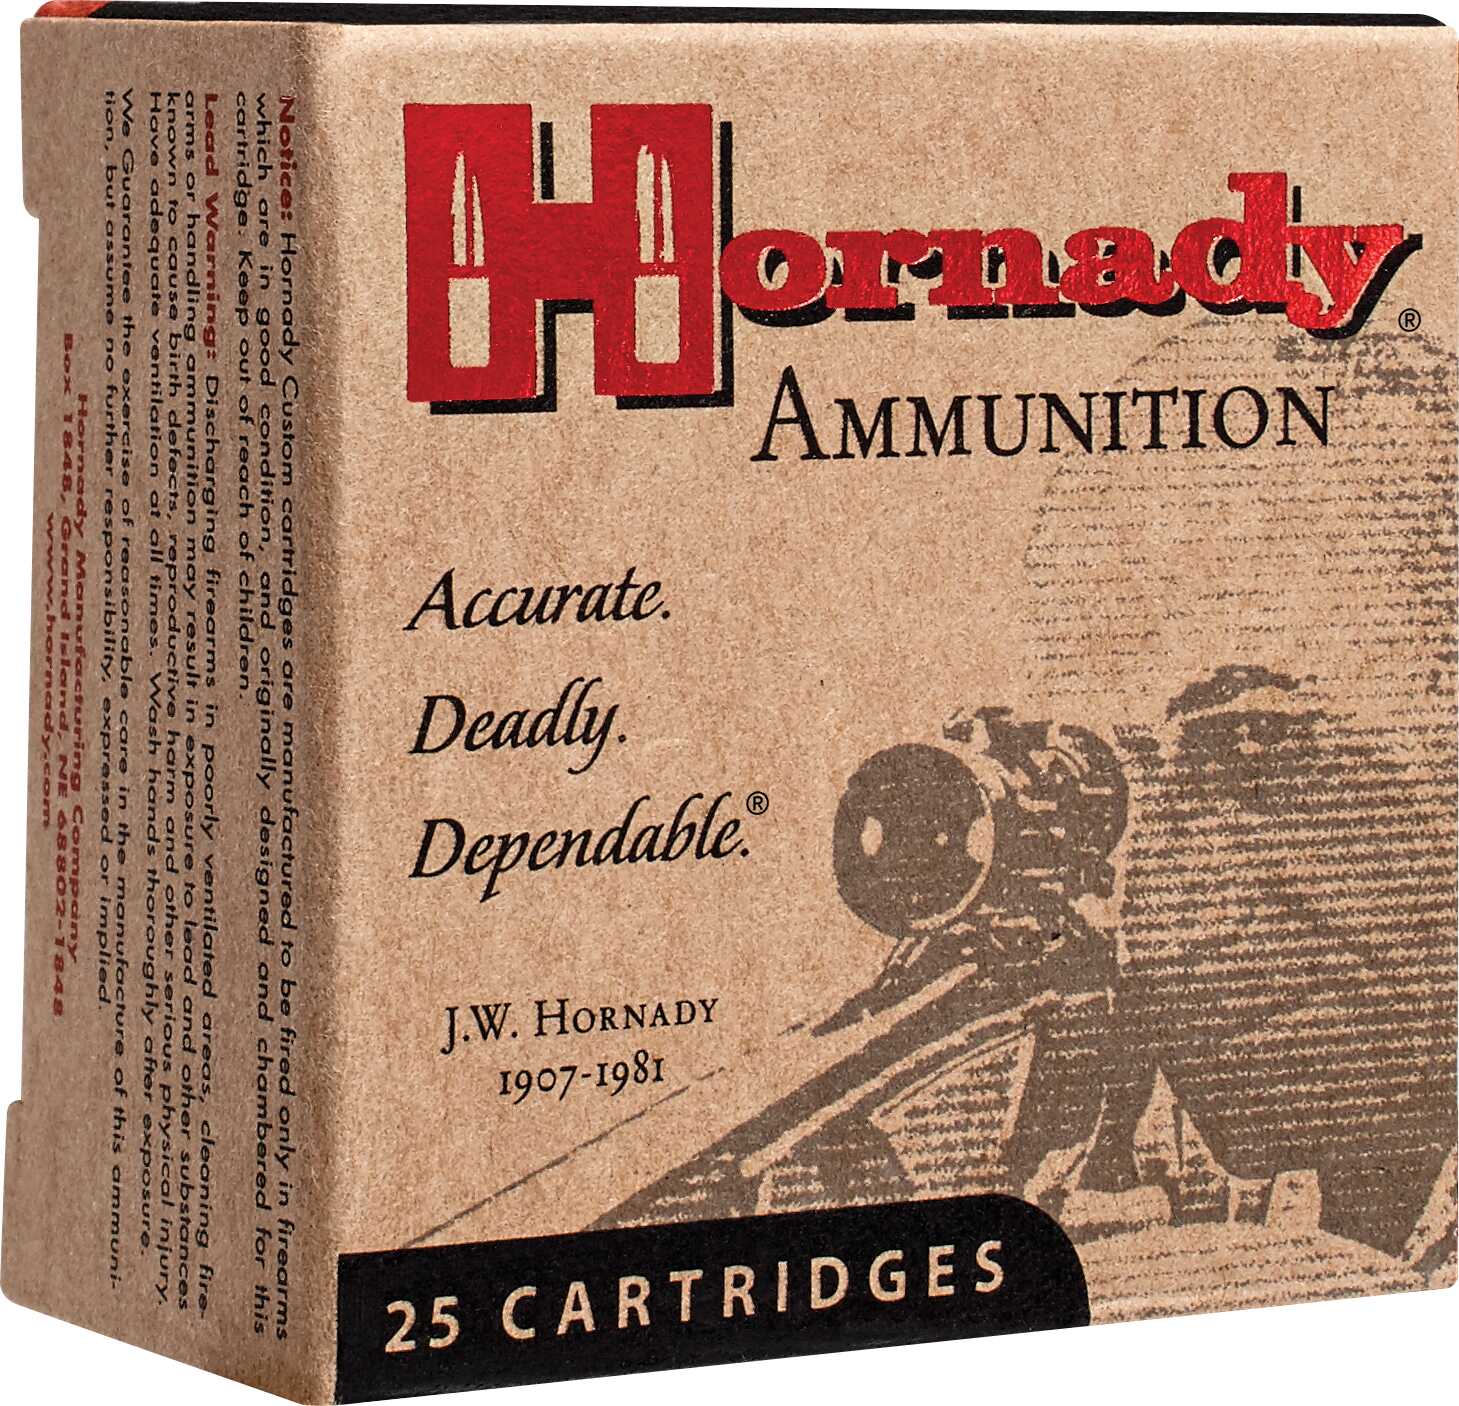 10mm 180 Grain Hollow Point 20 Rounds Hornady Ammunition